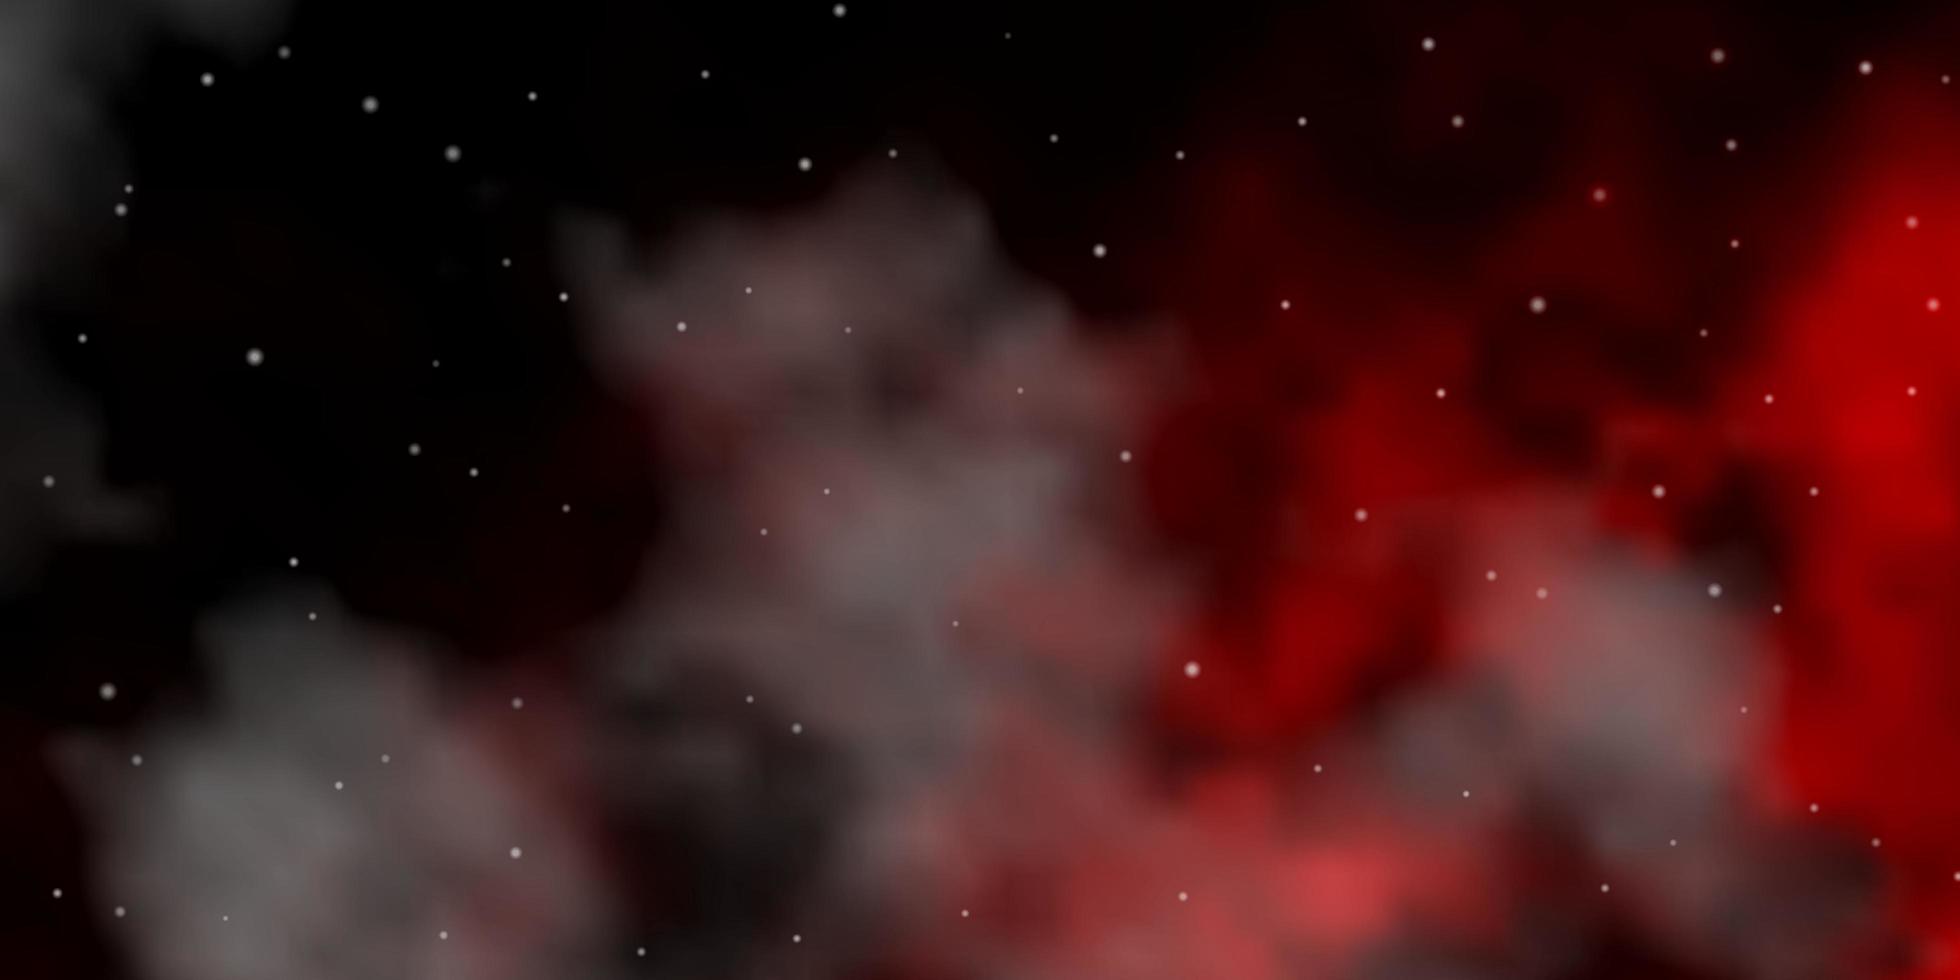 patrón de vector rojo oscuro con estrellas abstractas.